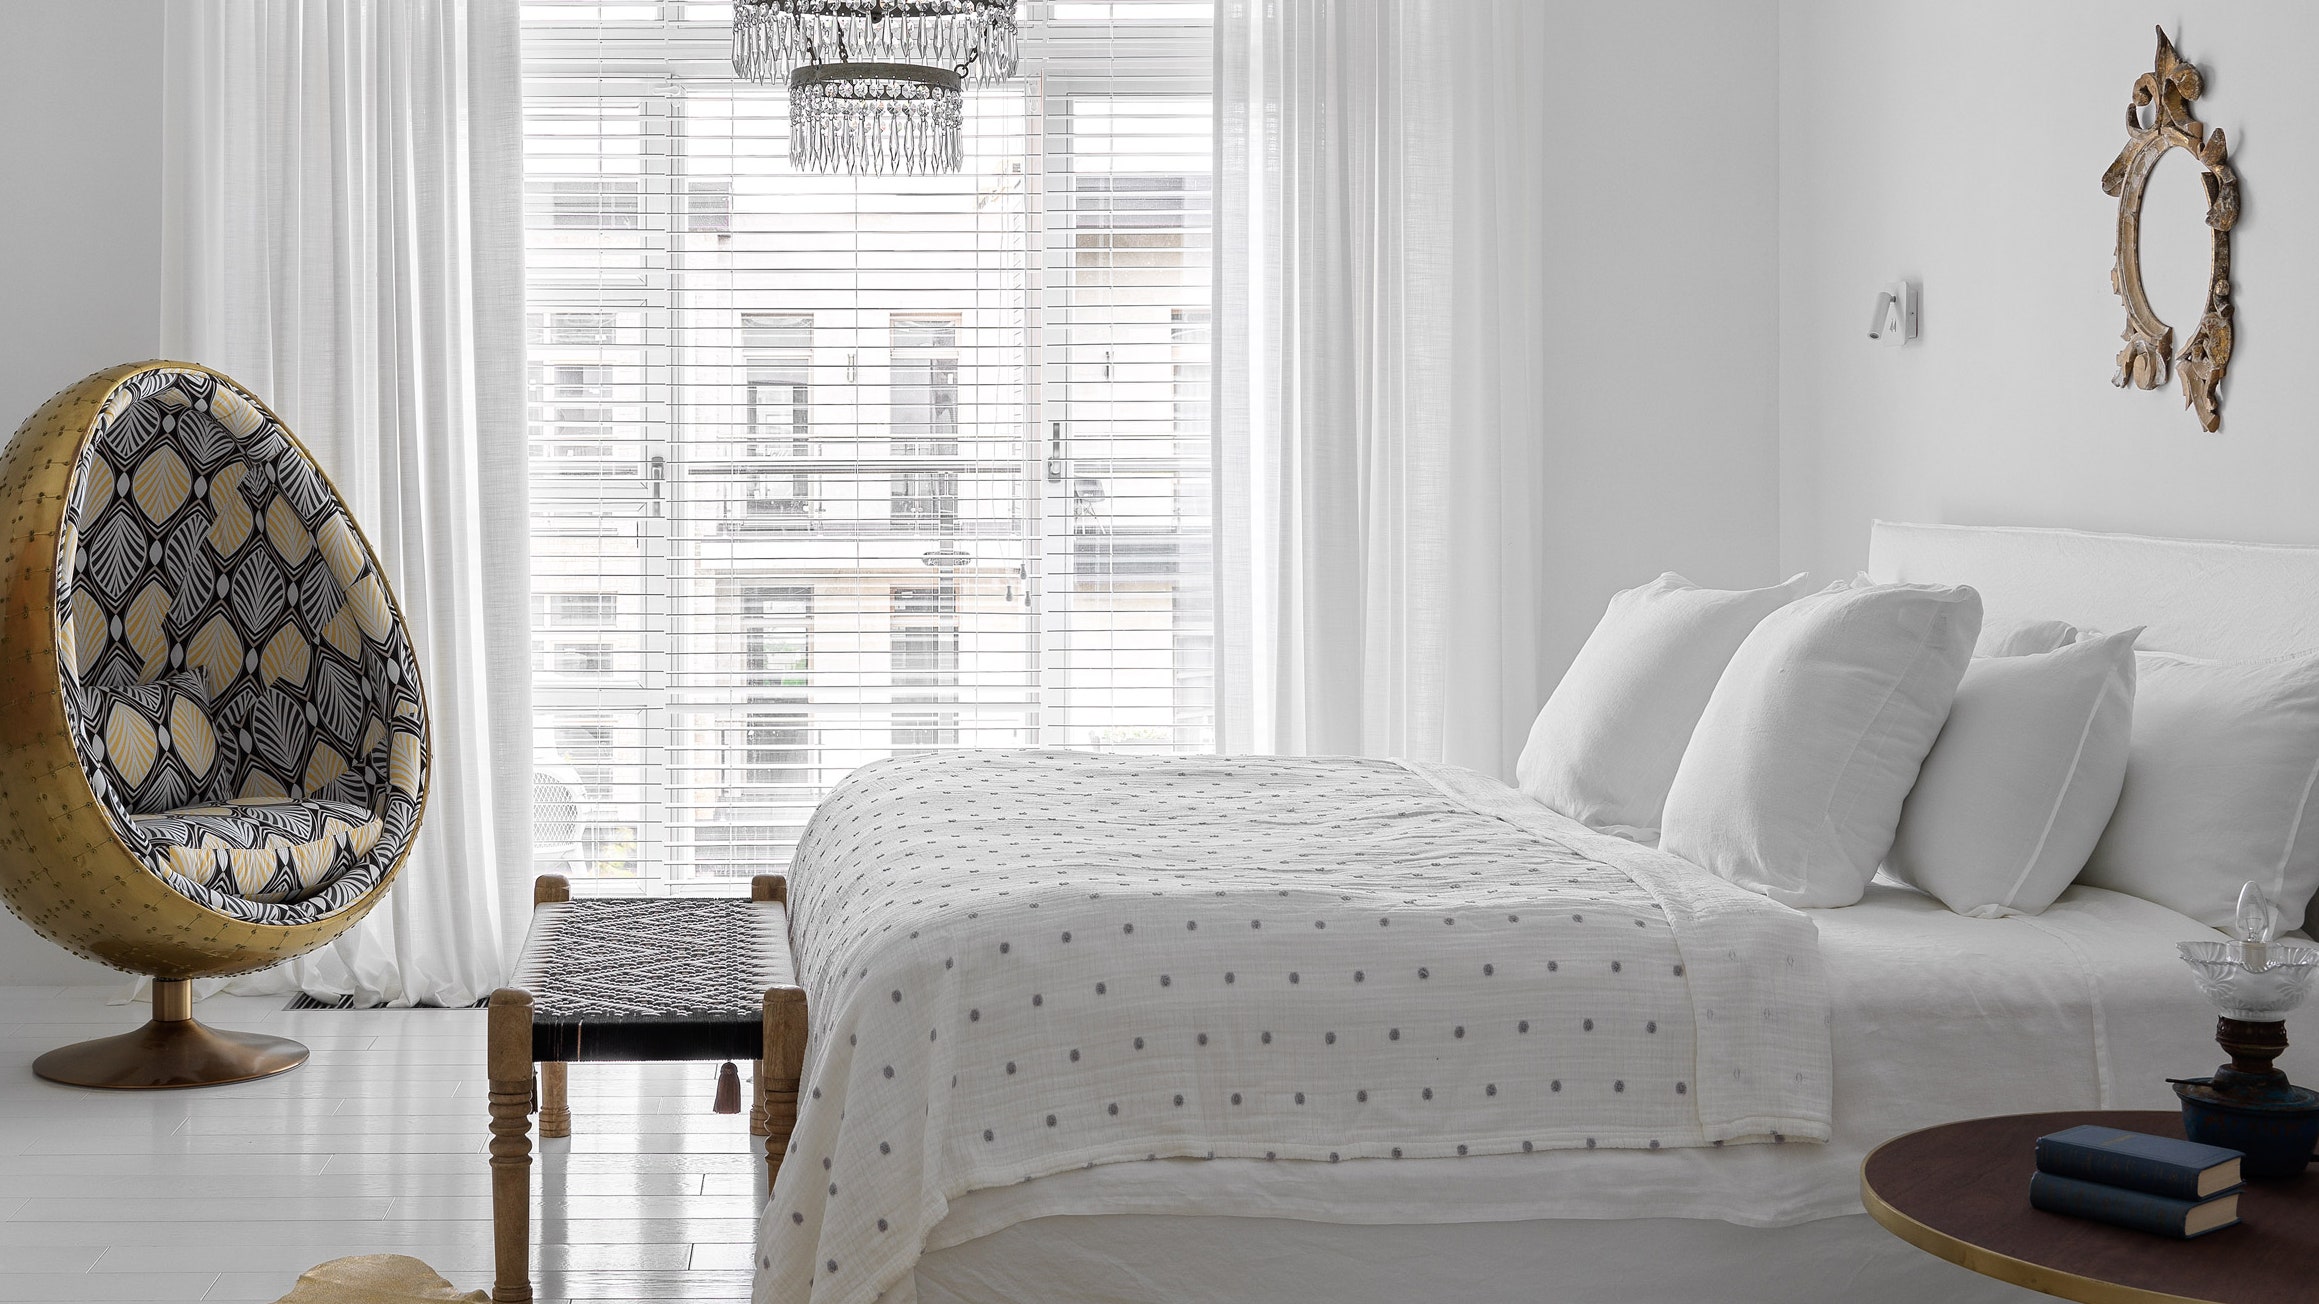 Дизайн спальни в белых тонах 10 примеров где цвет выполняет разные функции